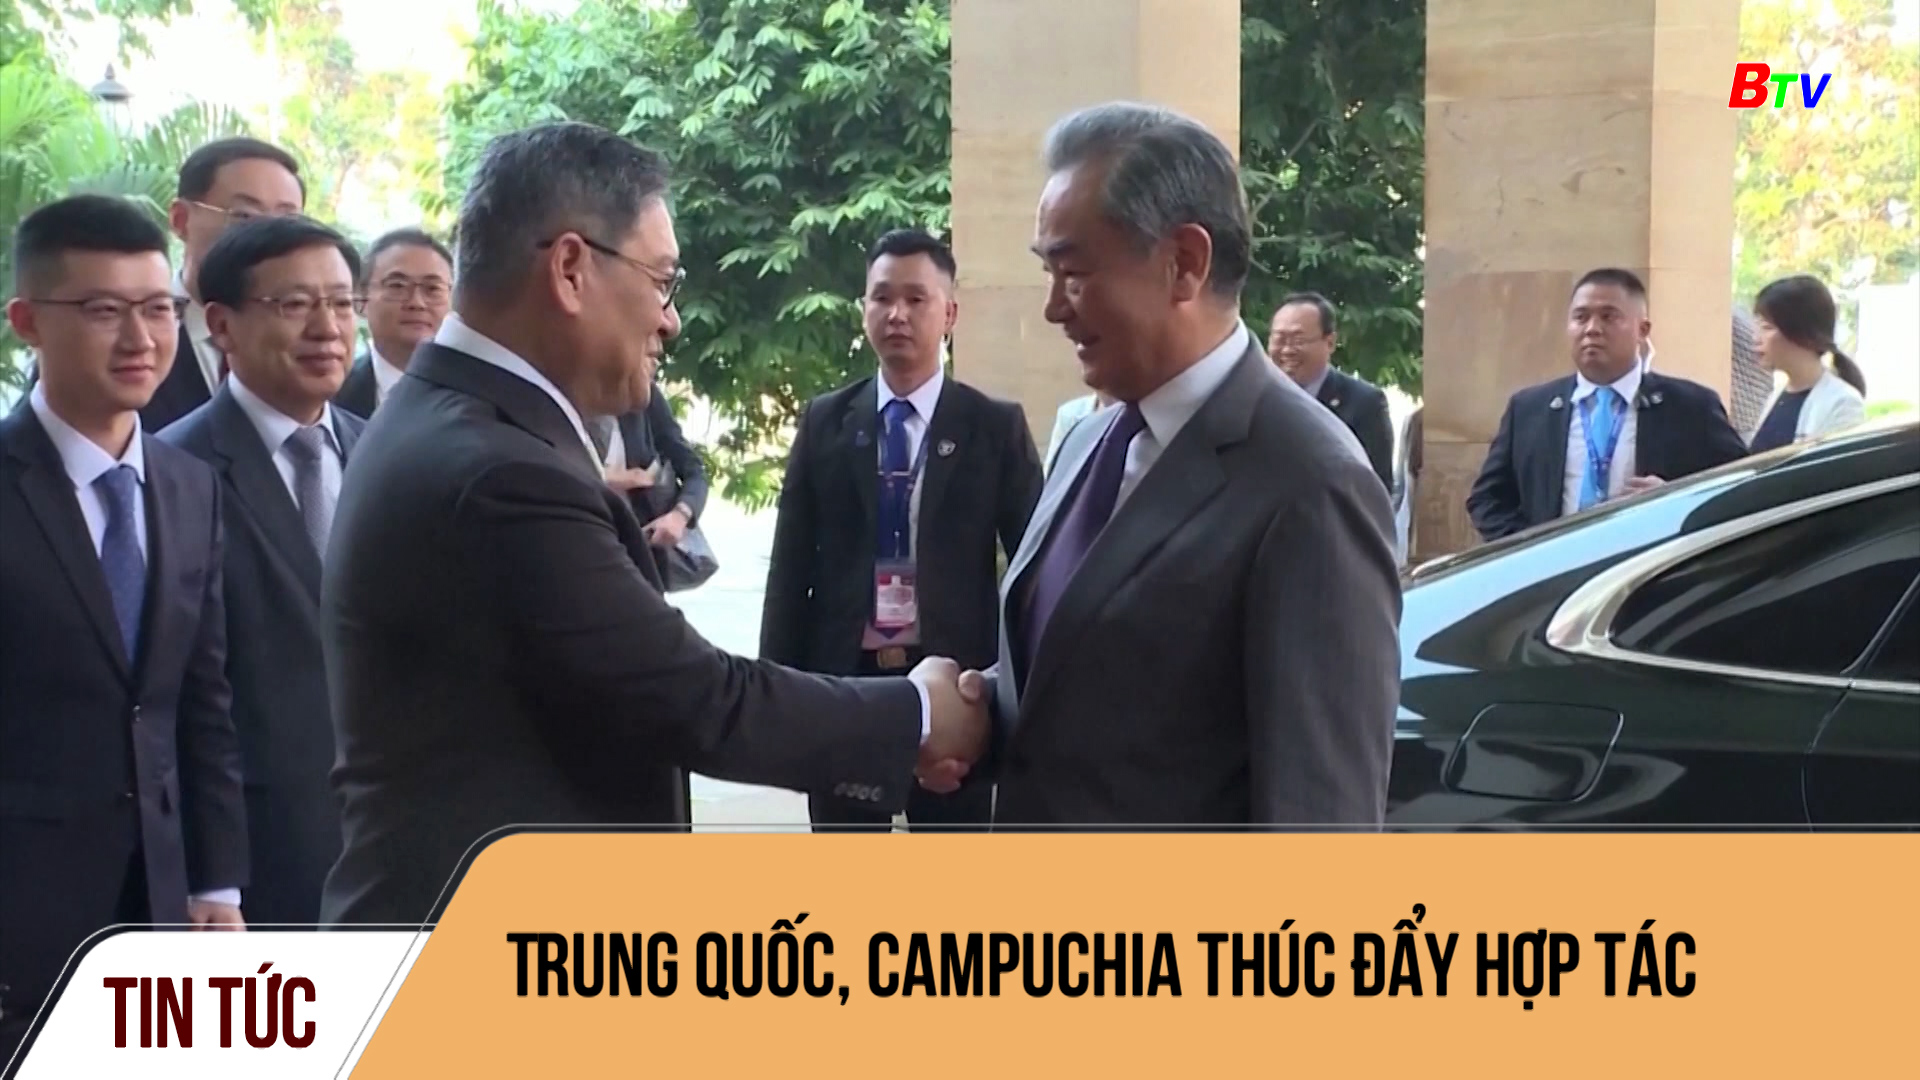 Trung Quốc, Campuchia thúc đẩy hợp tác